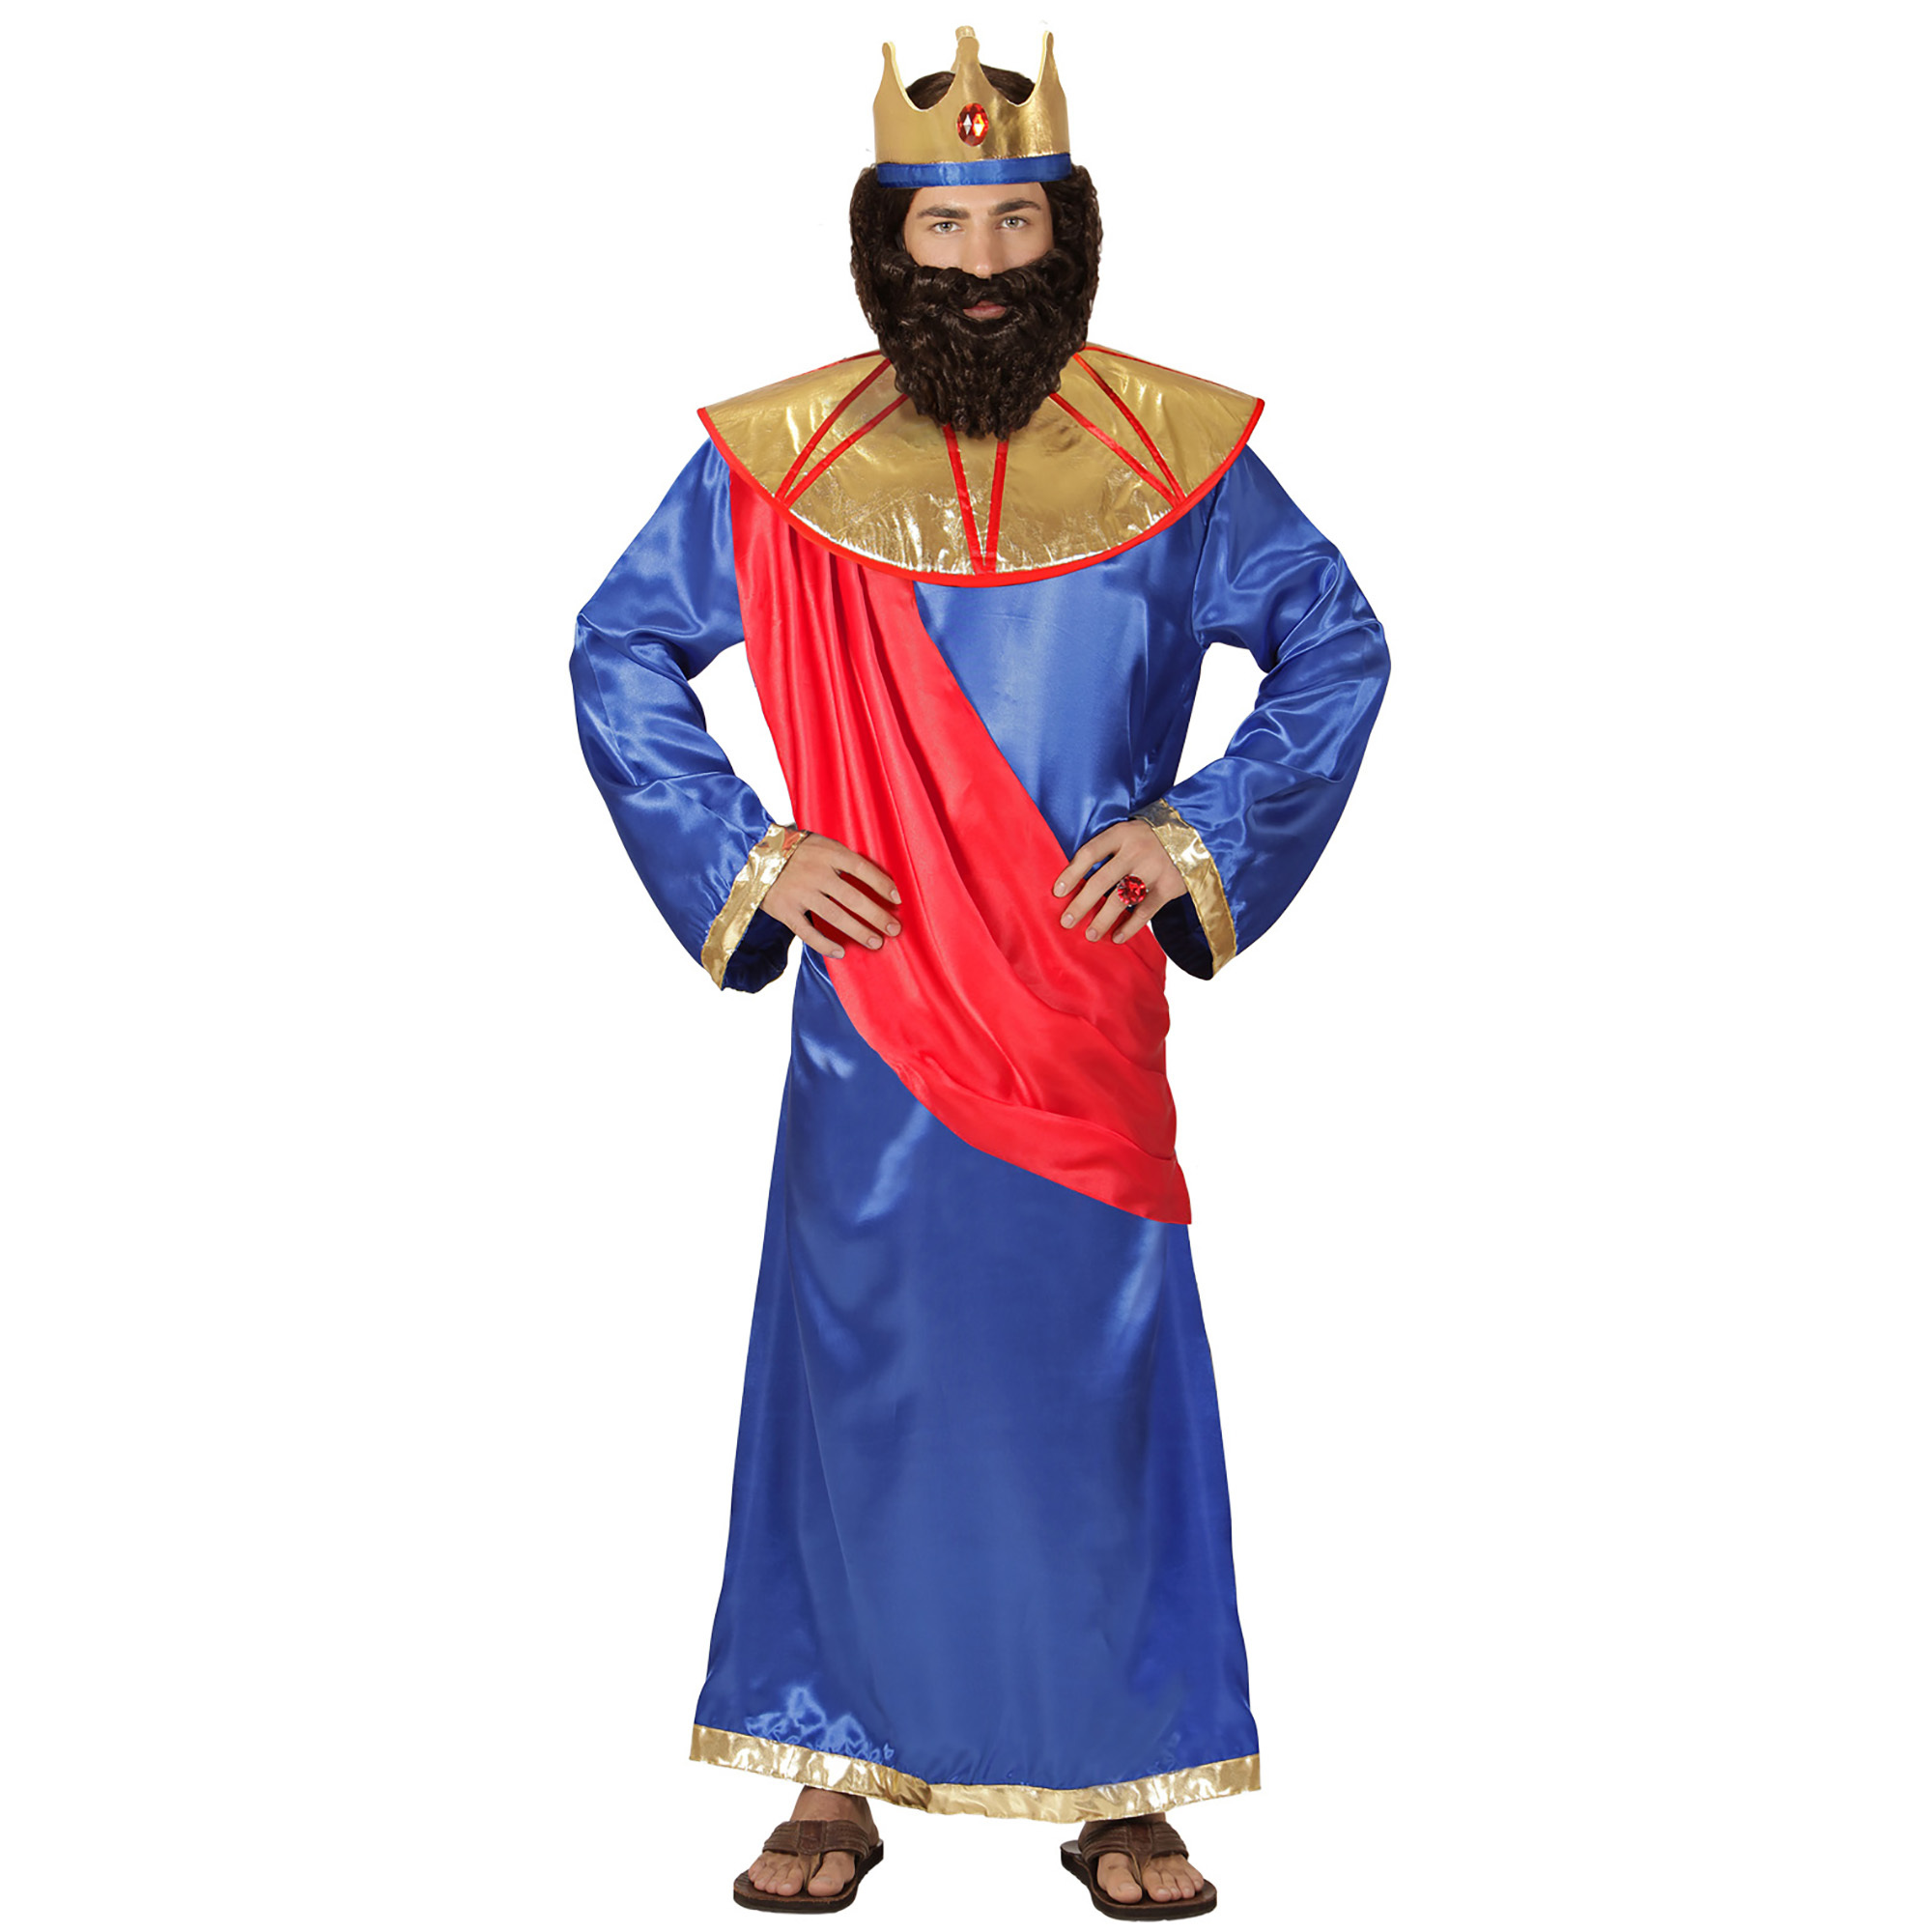 Conjugeren Archaïsch video Koning kostuum volwassen 3 koningen Goedkoop